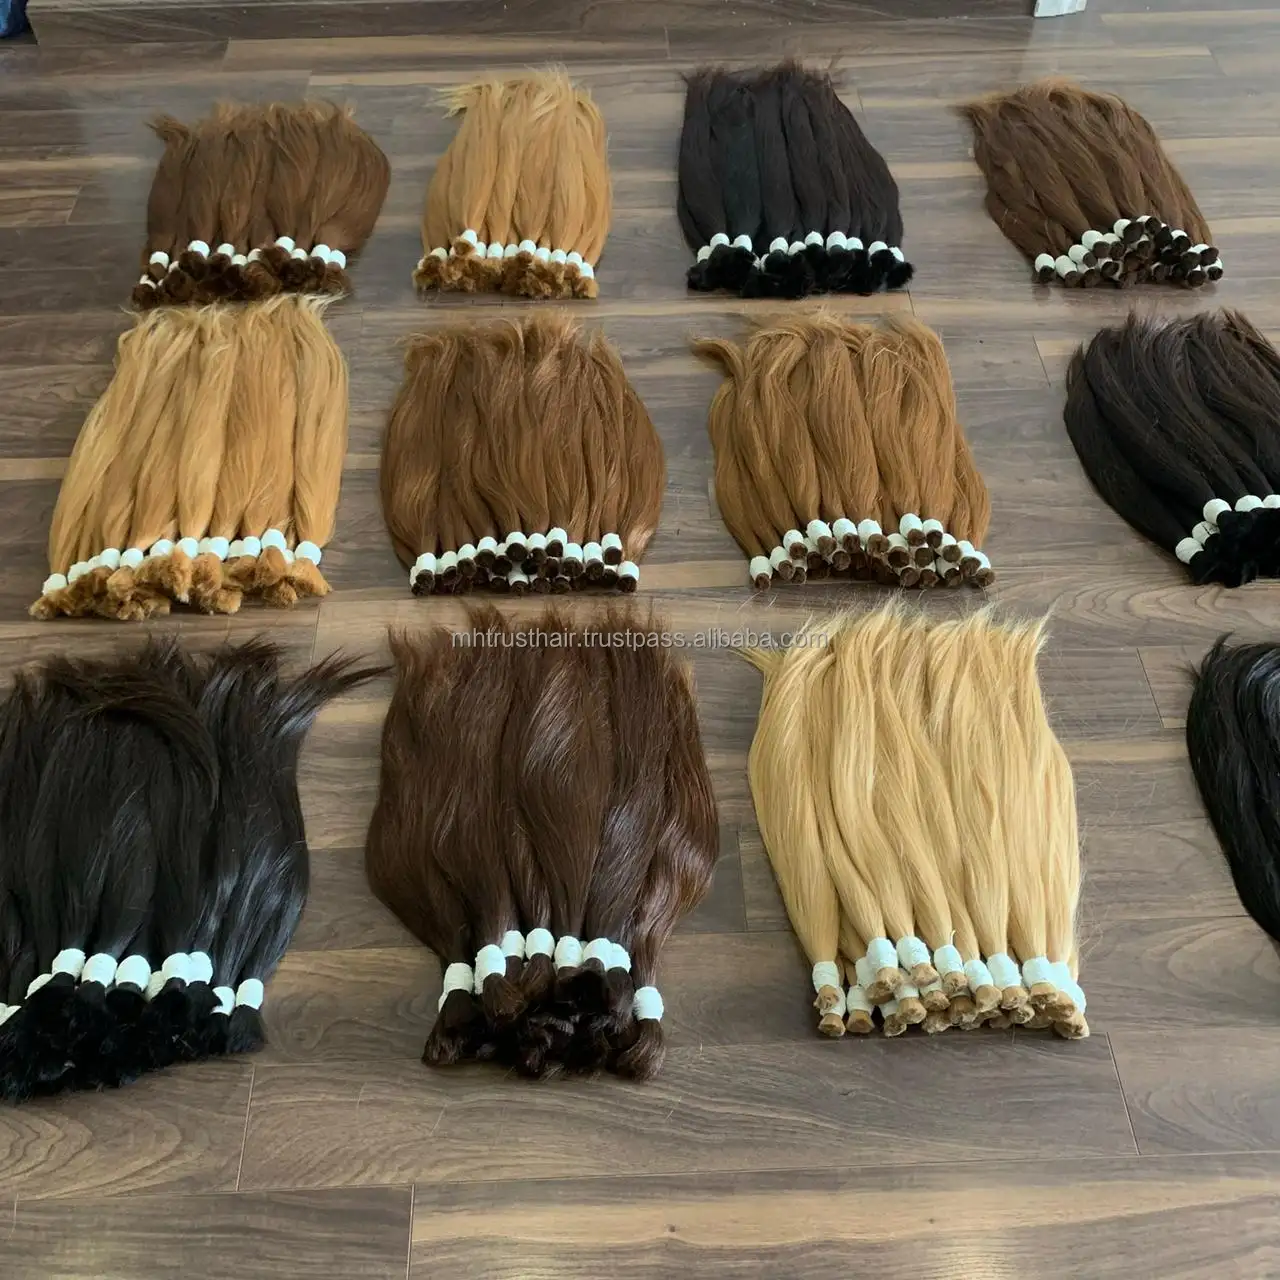 Cheveux vierges humains, vente en gros de cheveux vietnamiens bruts non transformés alignés sur les cuticules, cheveux bon marché pour les coiffeurs et les salons de coiffure